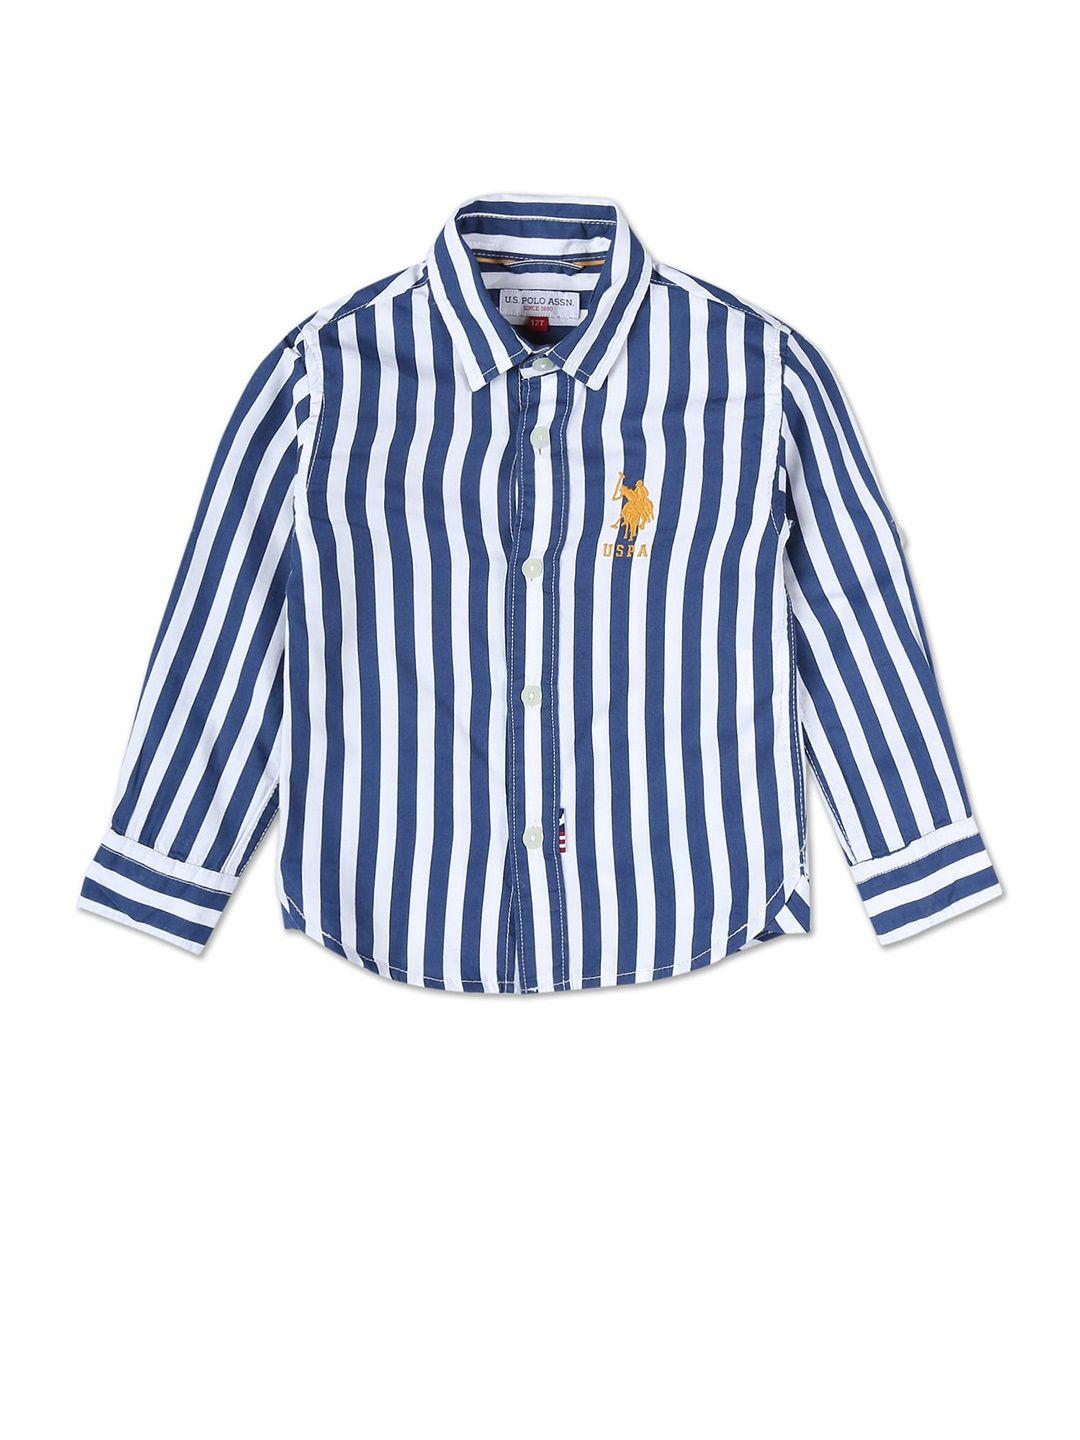 U.S. Polo Assn. Kids Boys Regular Fit Striped Casual Shirt